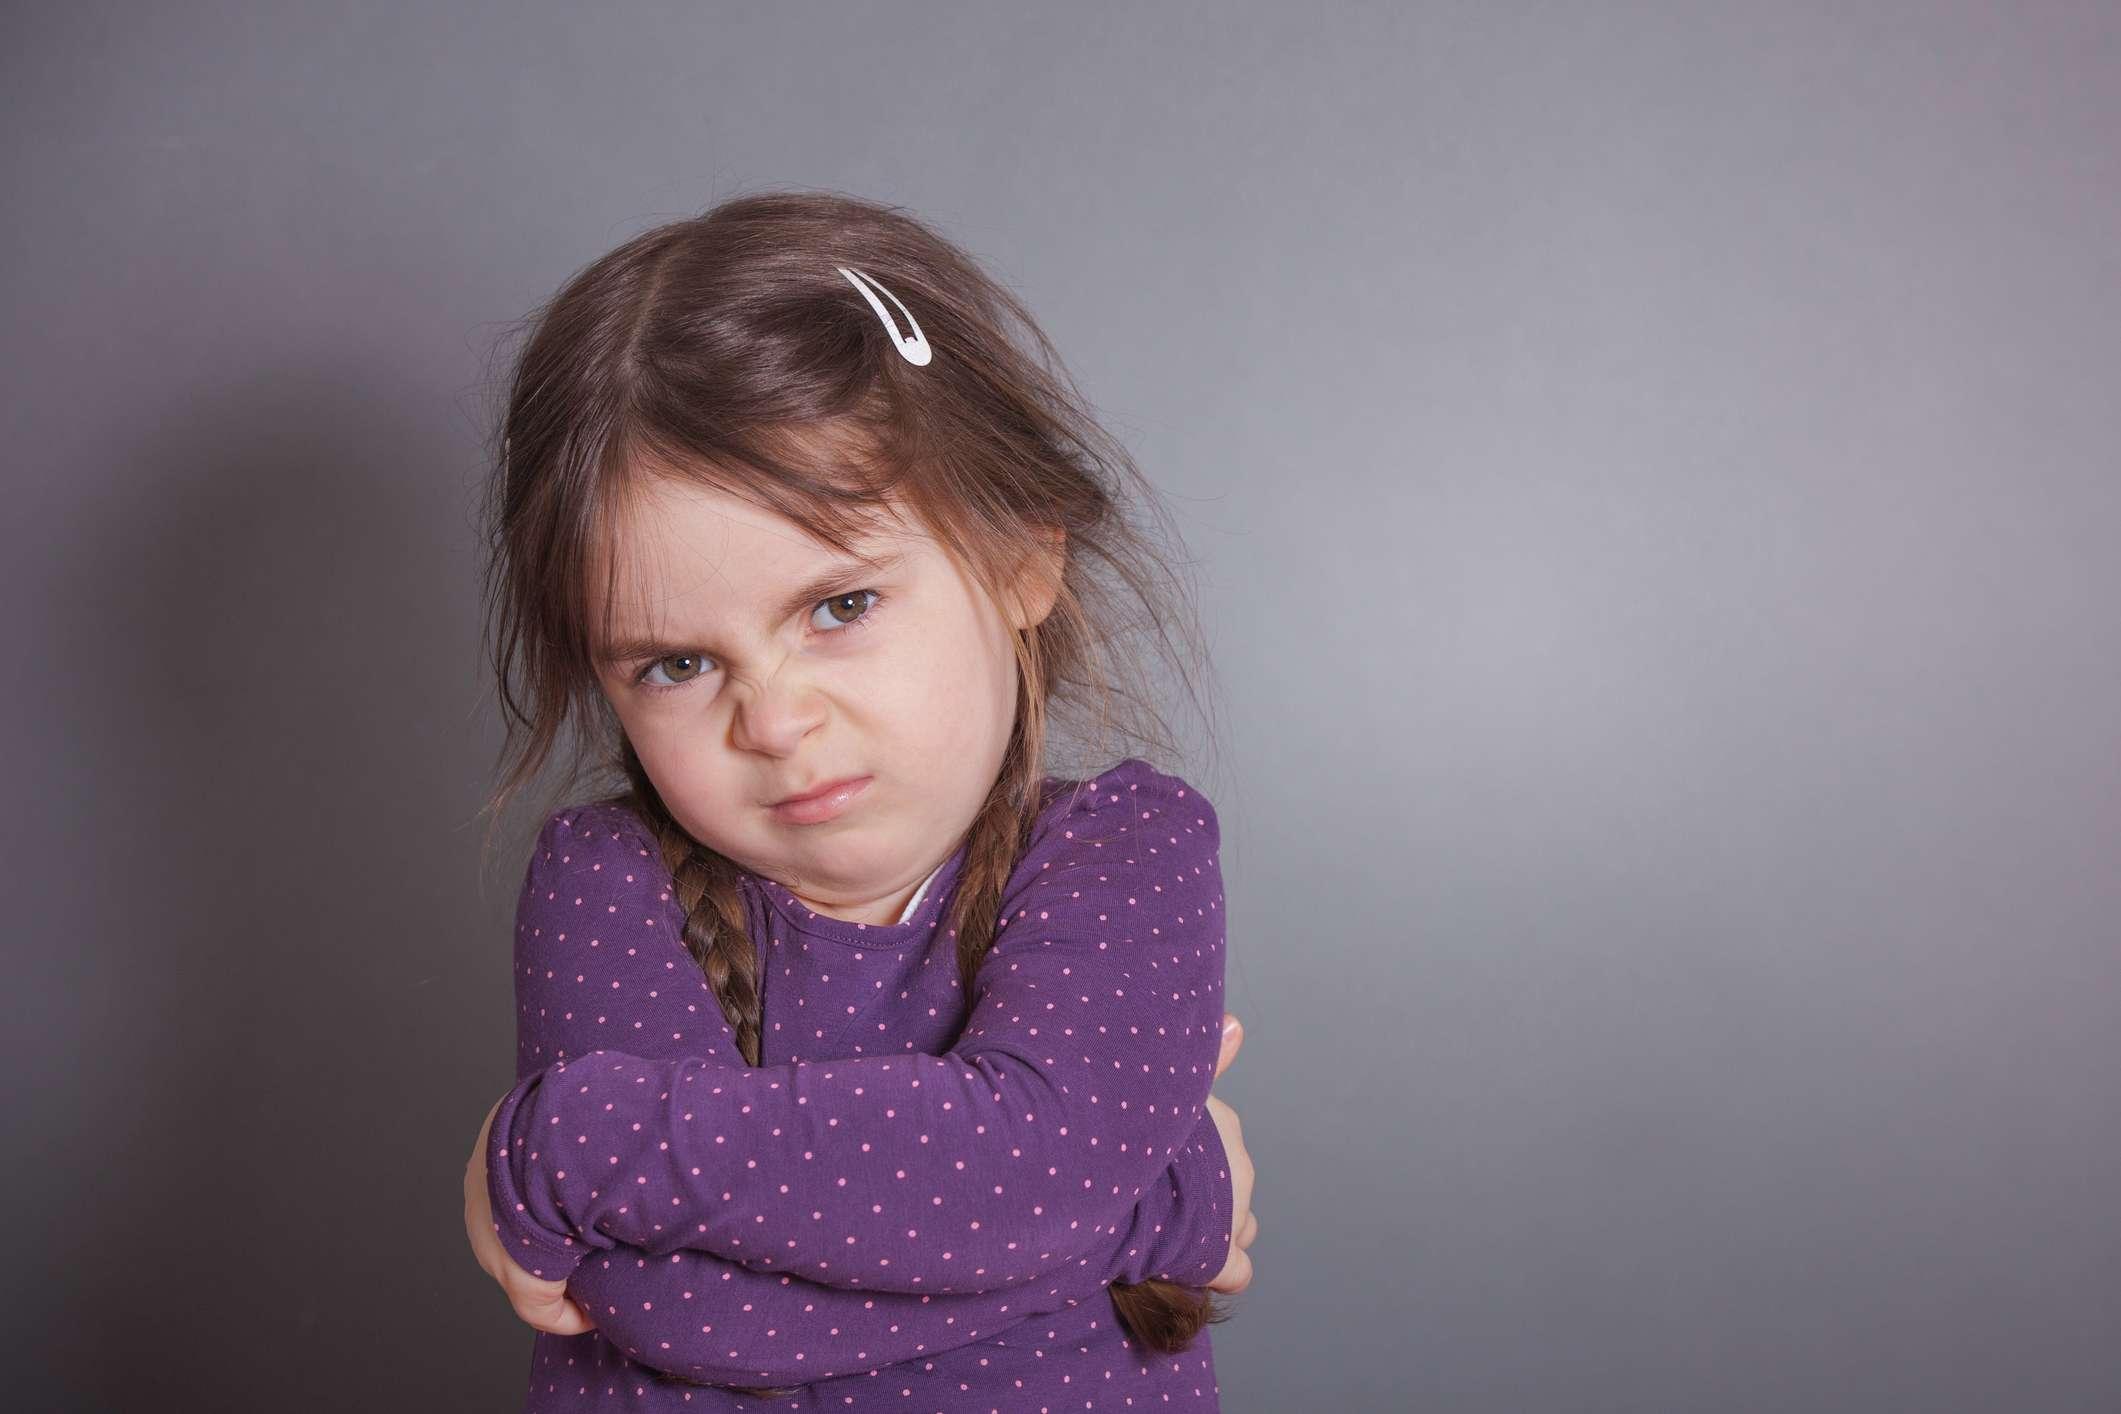 Ein kleines süßes Mädchen schmollt. Sie trägt ein lila Hemd vor einem grauen Hintergrund.